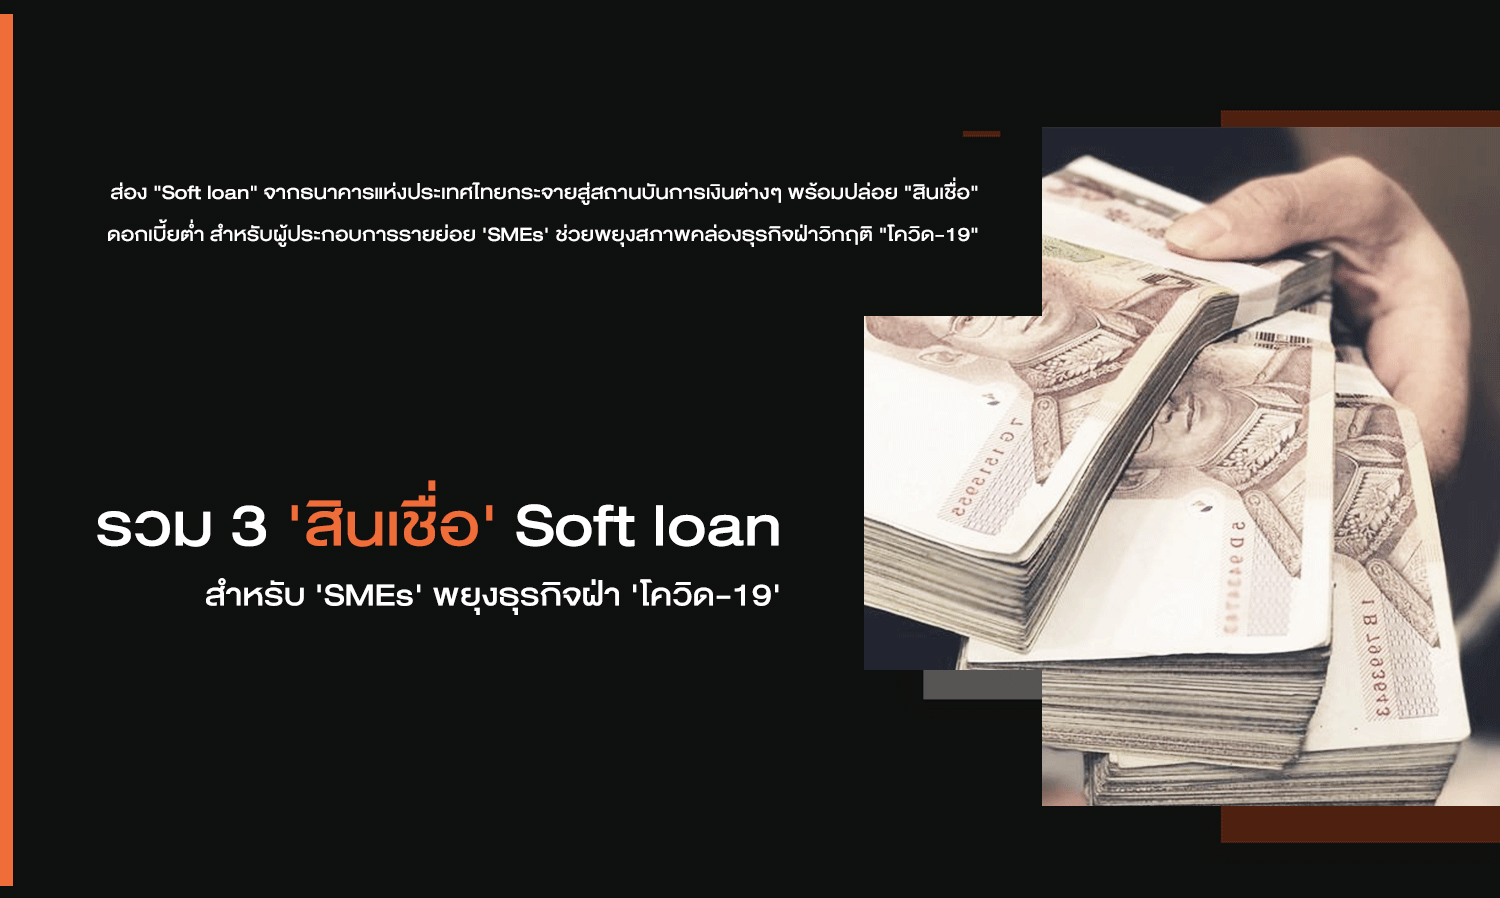 รวม 3 'สินเชื่อ' Soft loan สำหรับ 'SMEs' พยุงธุรกิจฝ่า 'โควิด-19'